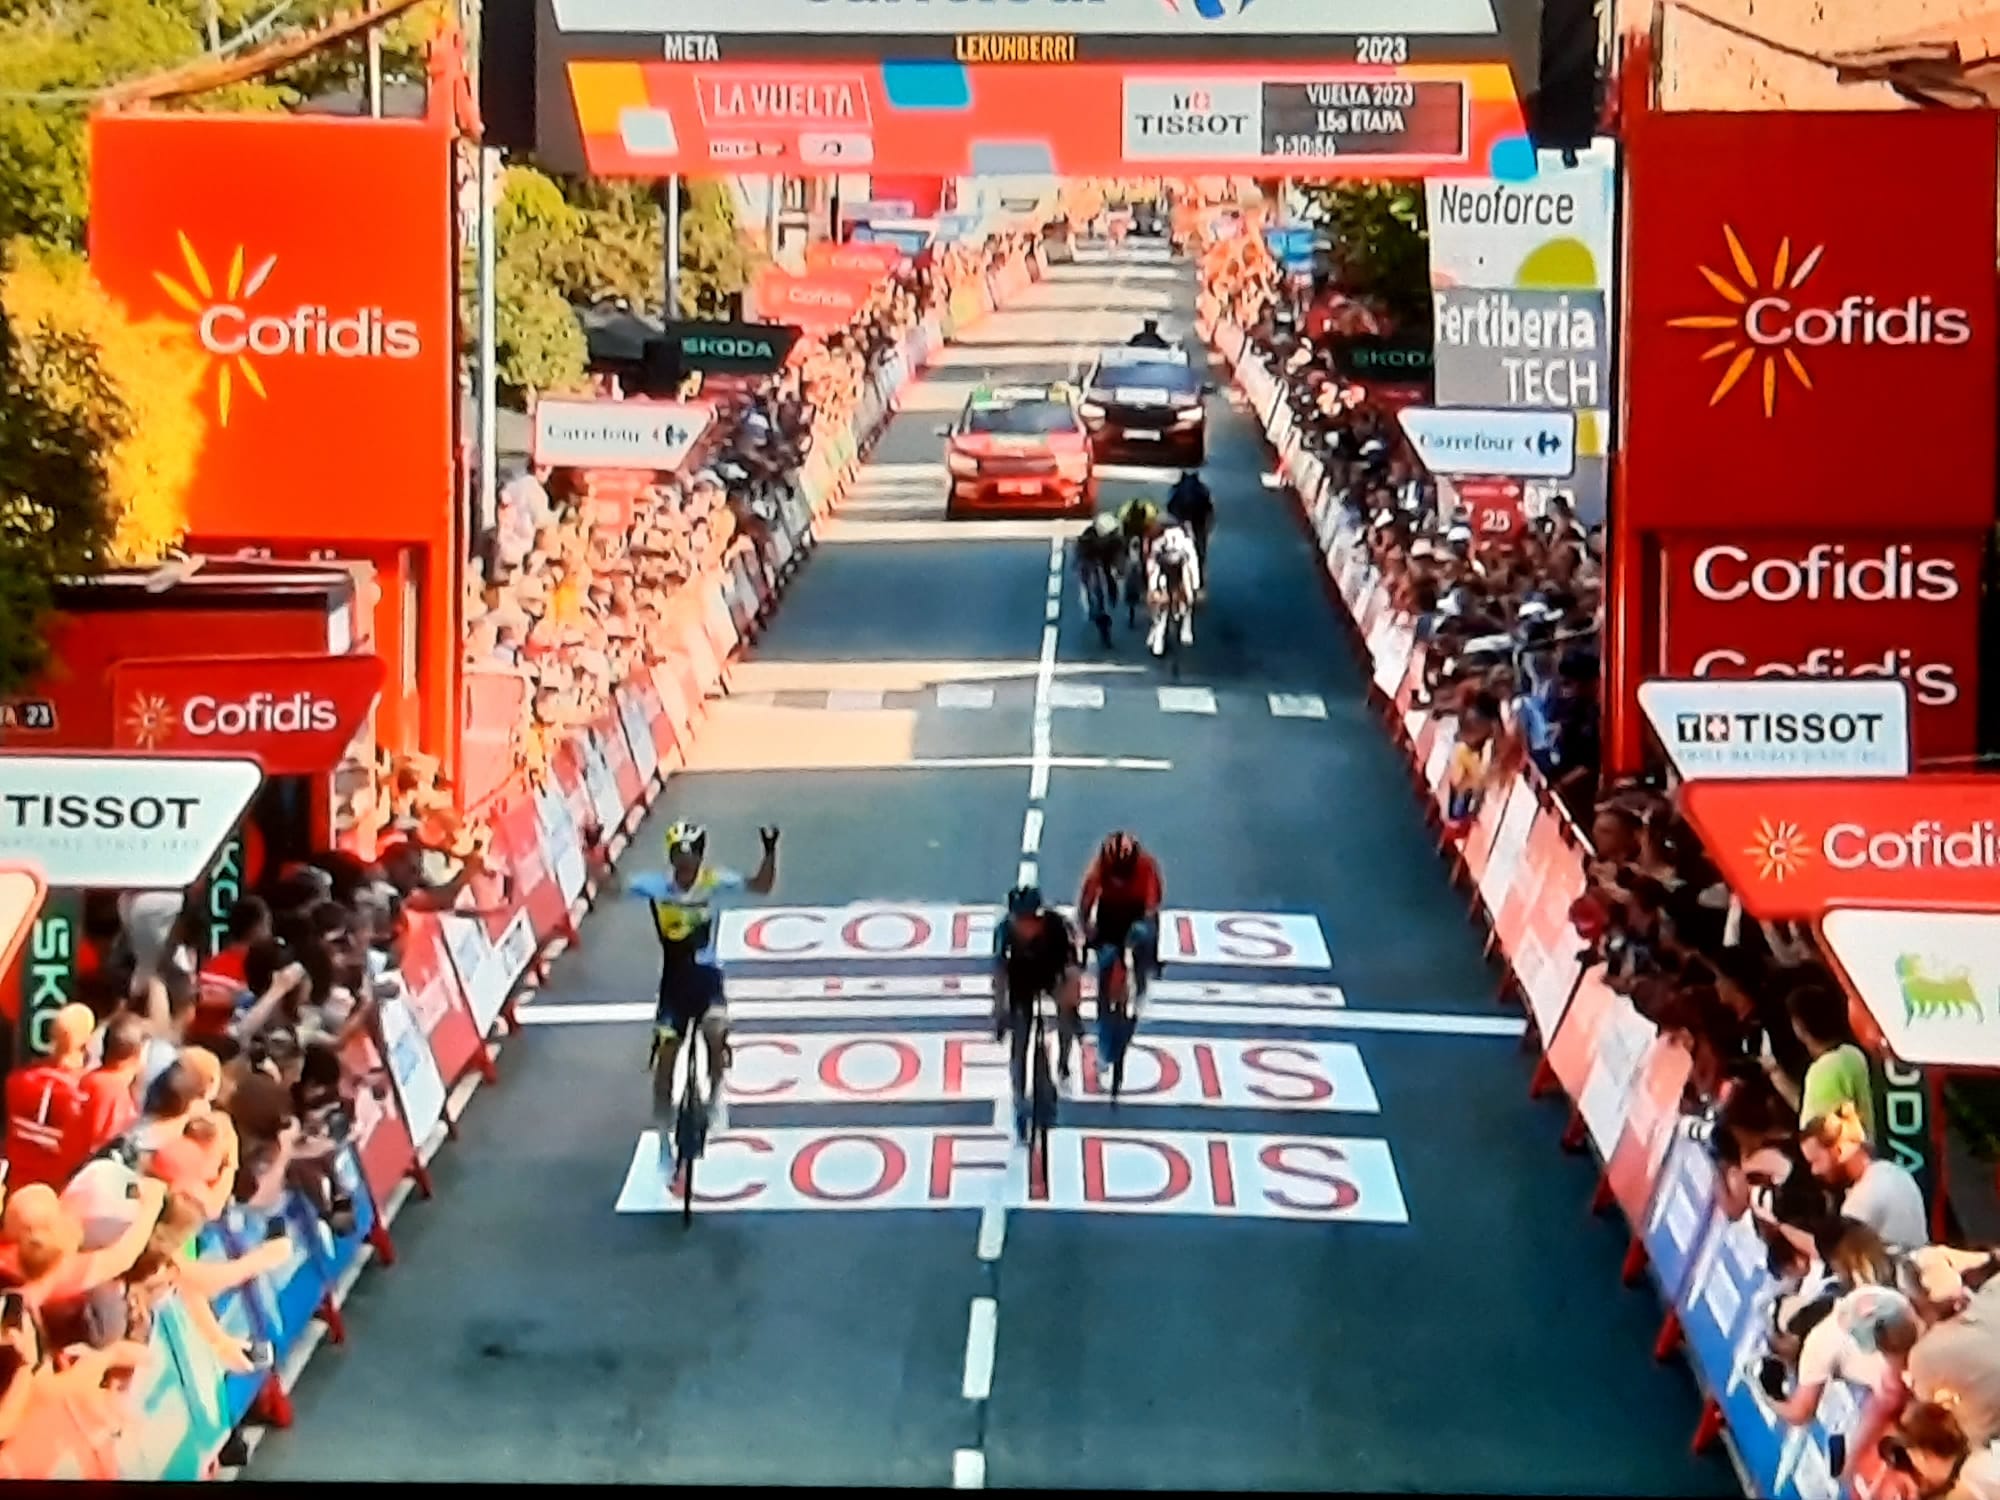 Rui Costa vence a 15ª etapa da Vuelta